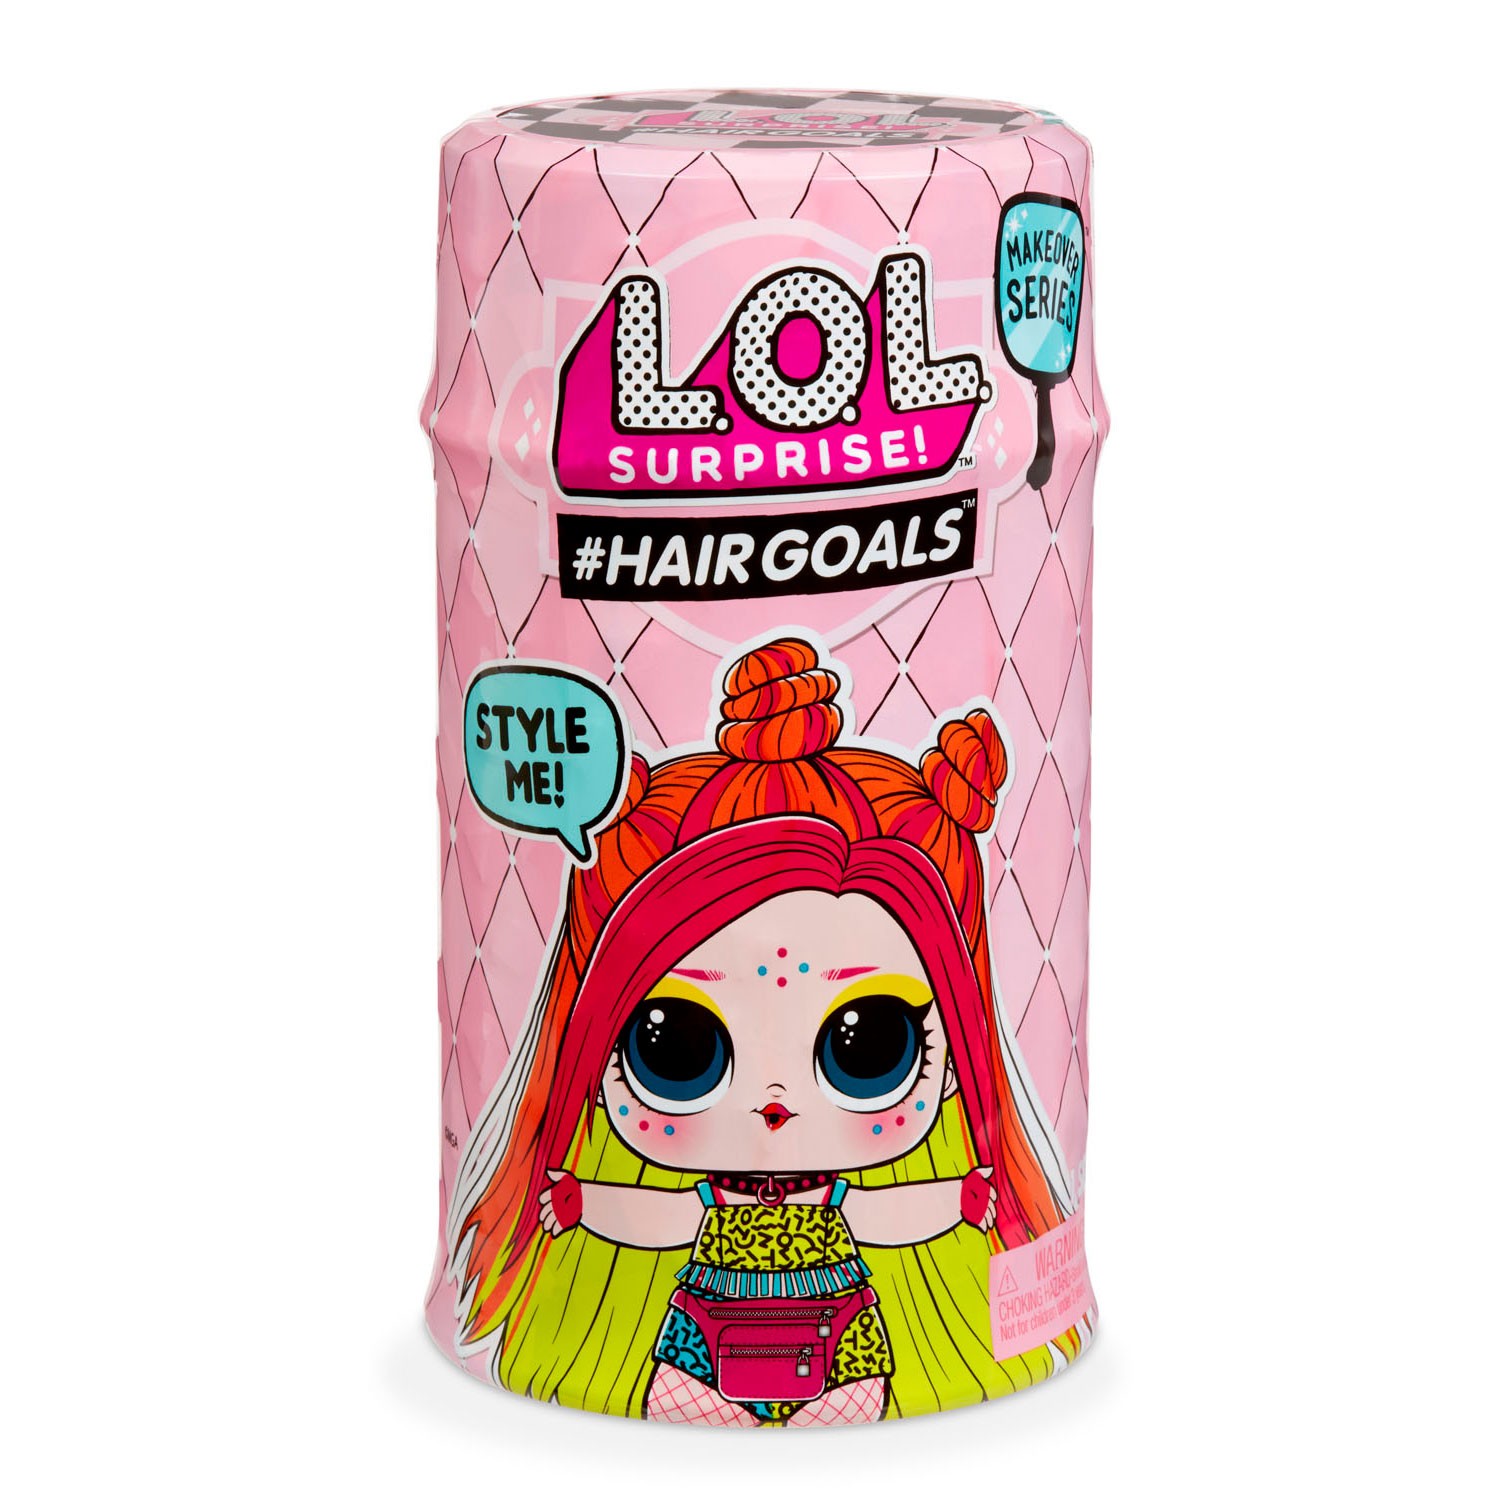 L.O.L. Surprise Hairgoals Series 2